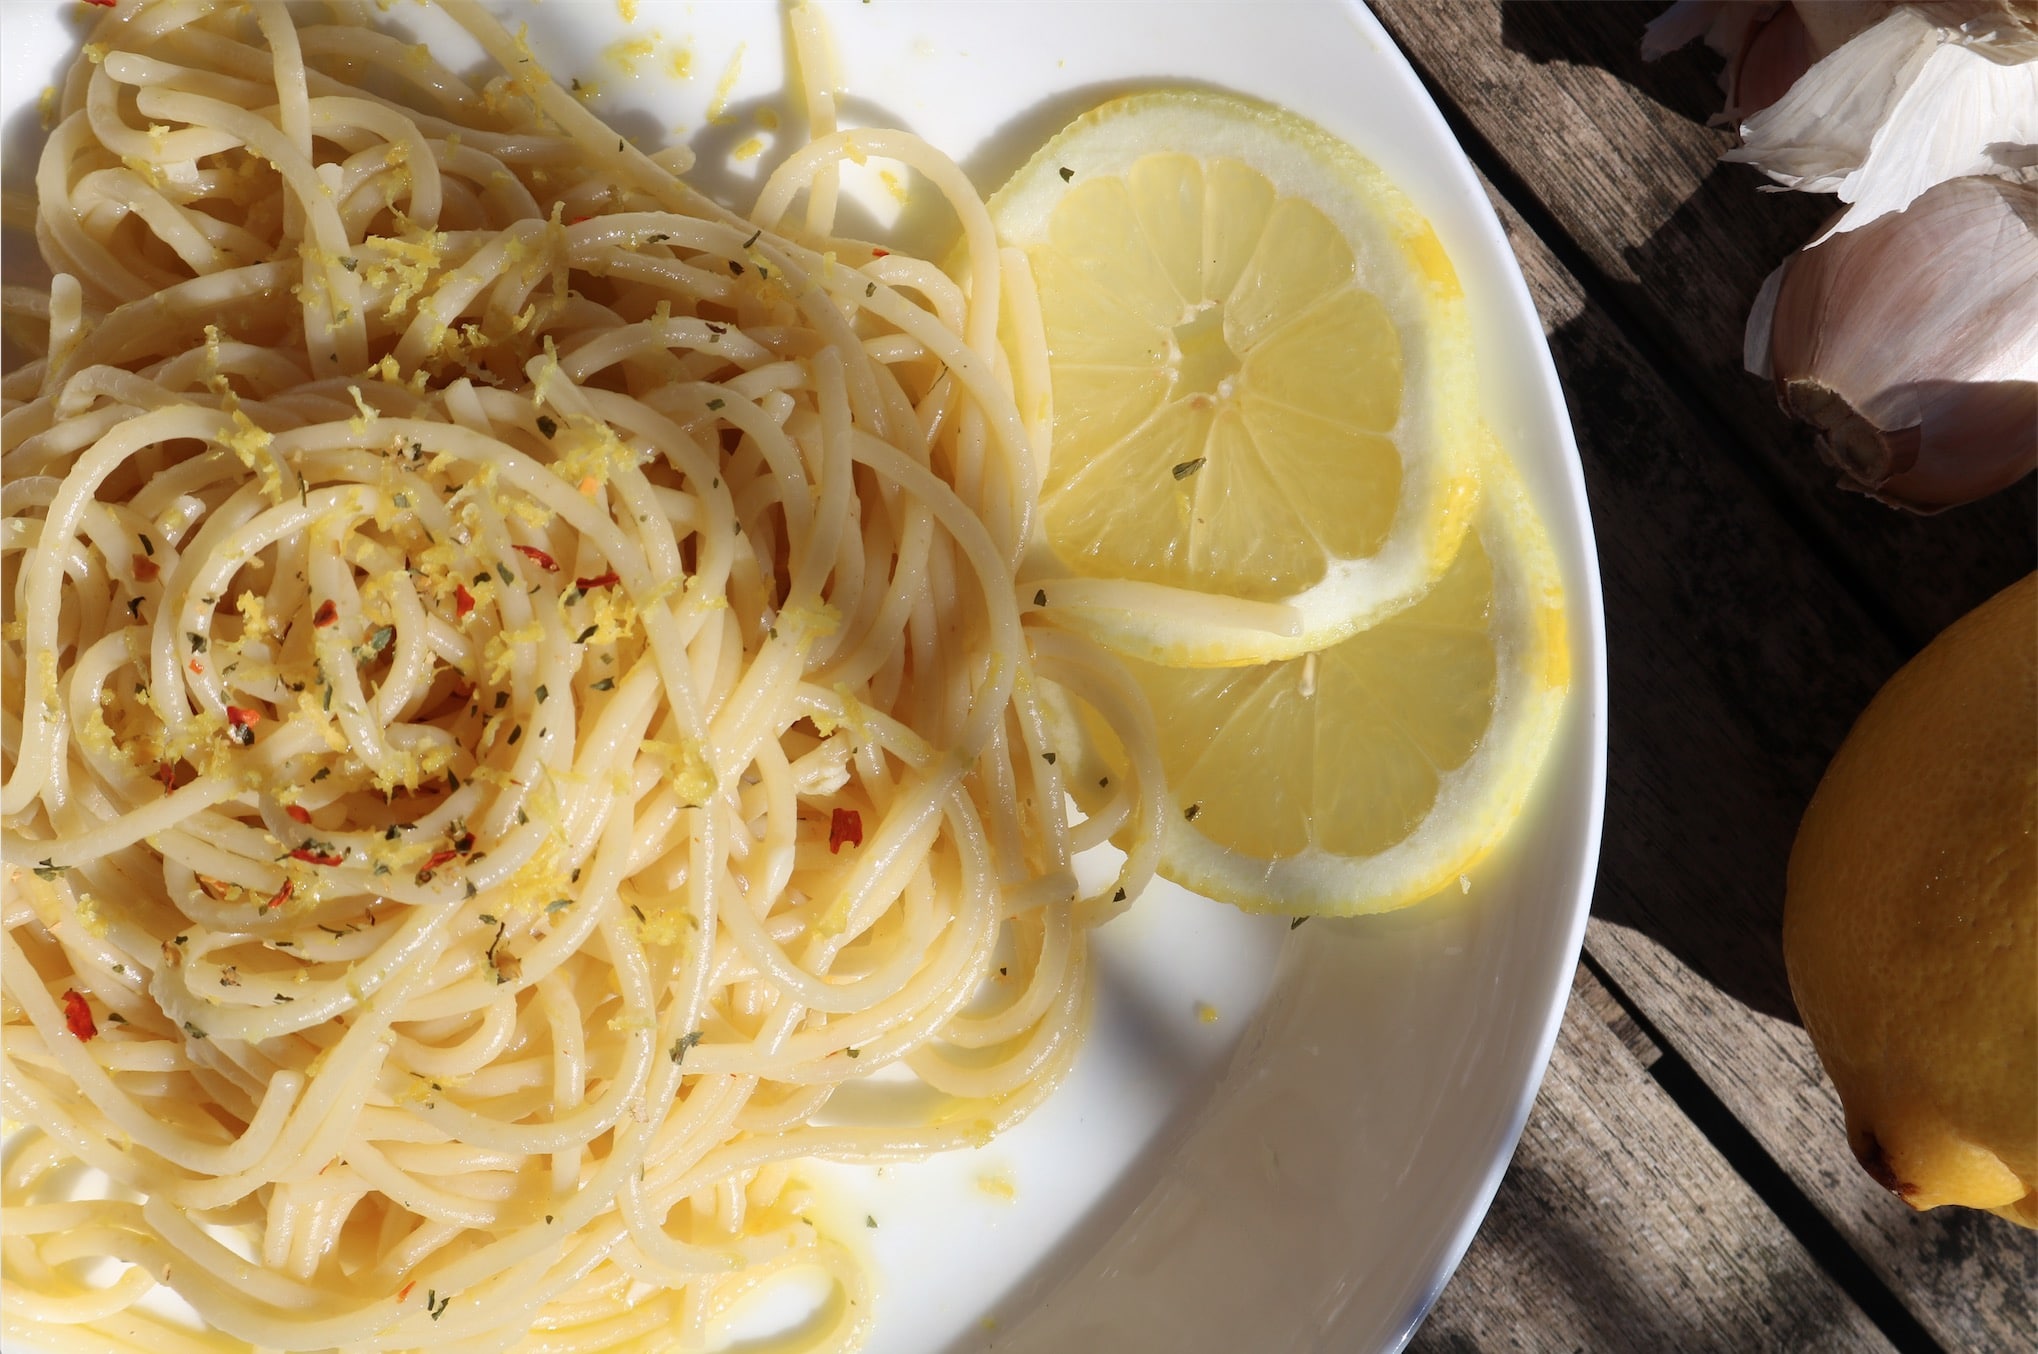 lemon garlic pasta